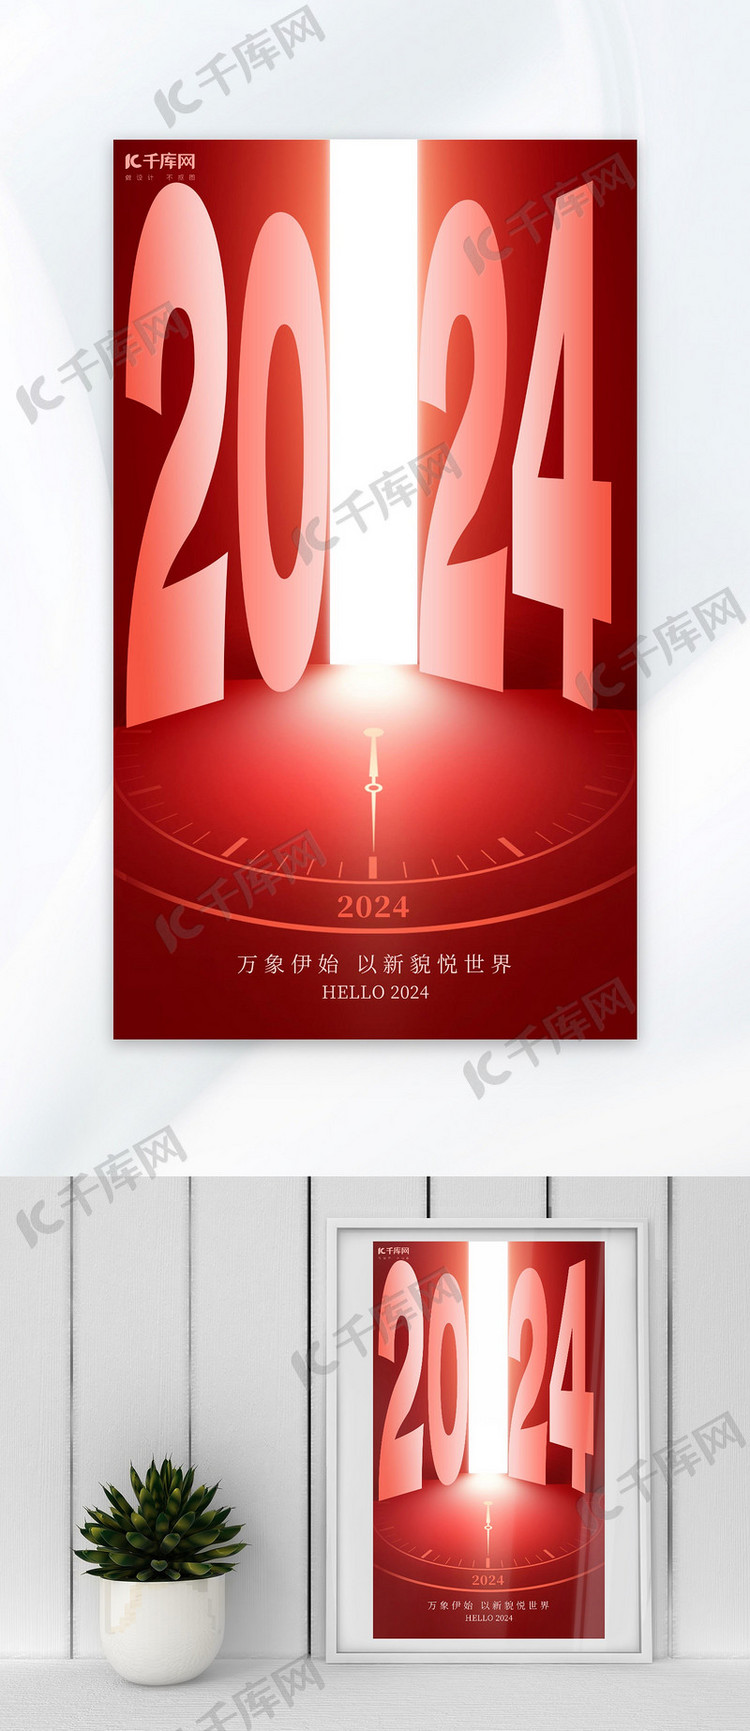 2024你好2024红色简约大字广告宣传海报